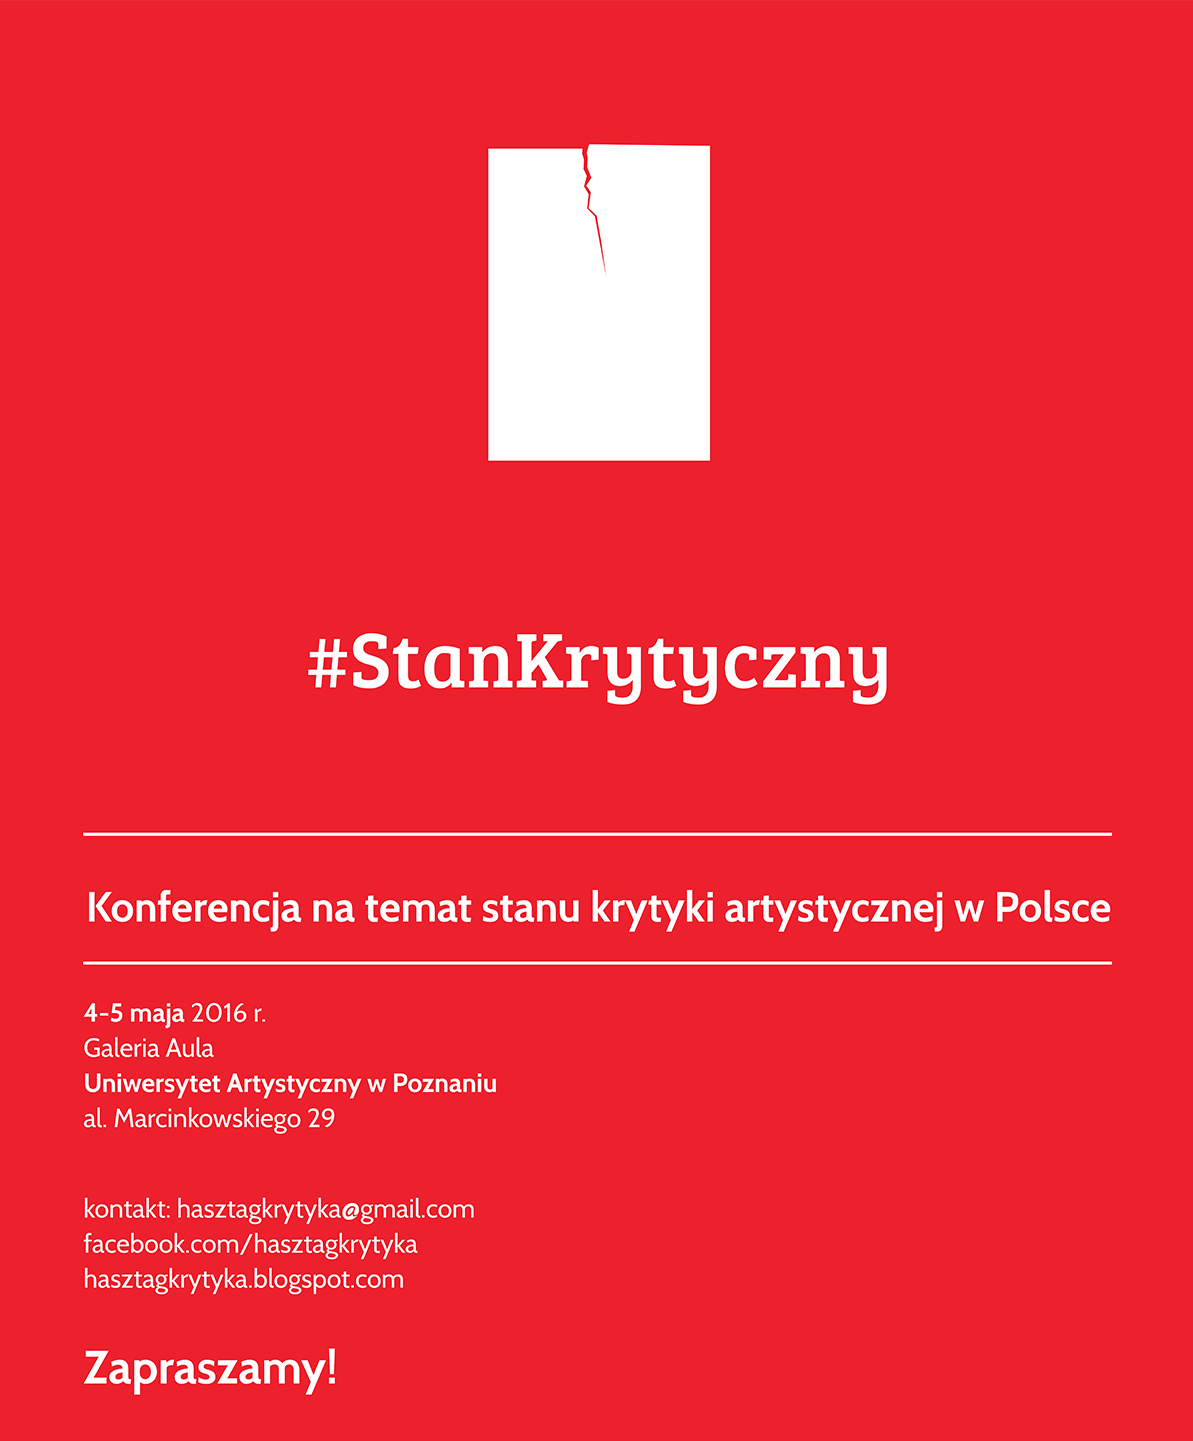 Konferencja #StanKrytyczny – plakat (źródło: materiały prasowe organizatora)